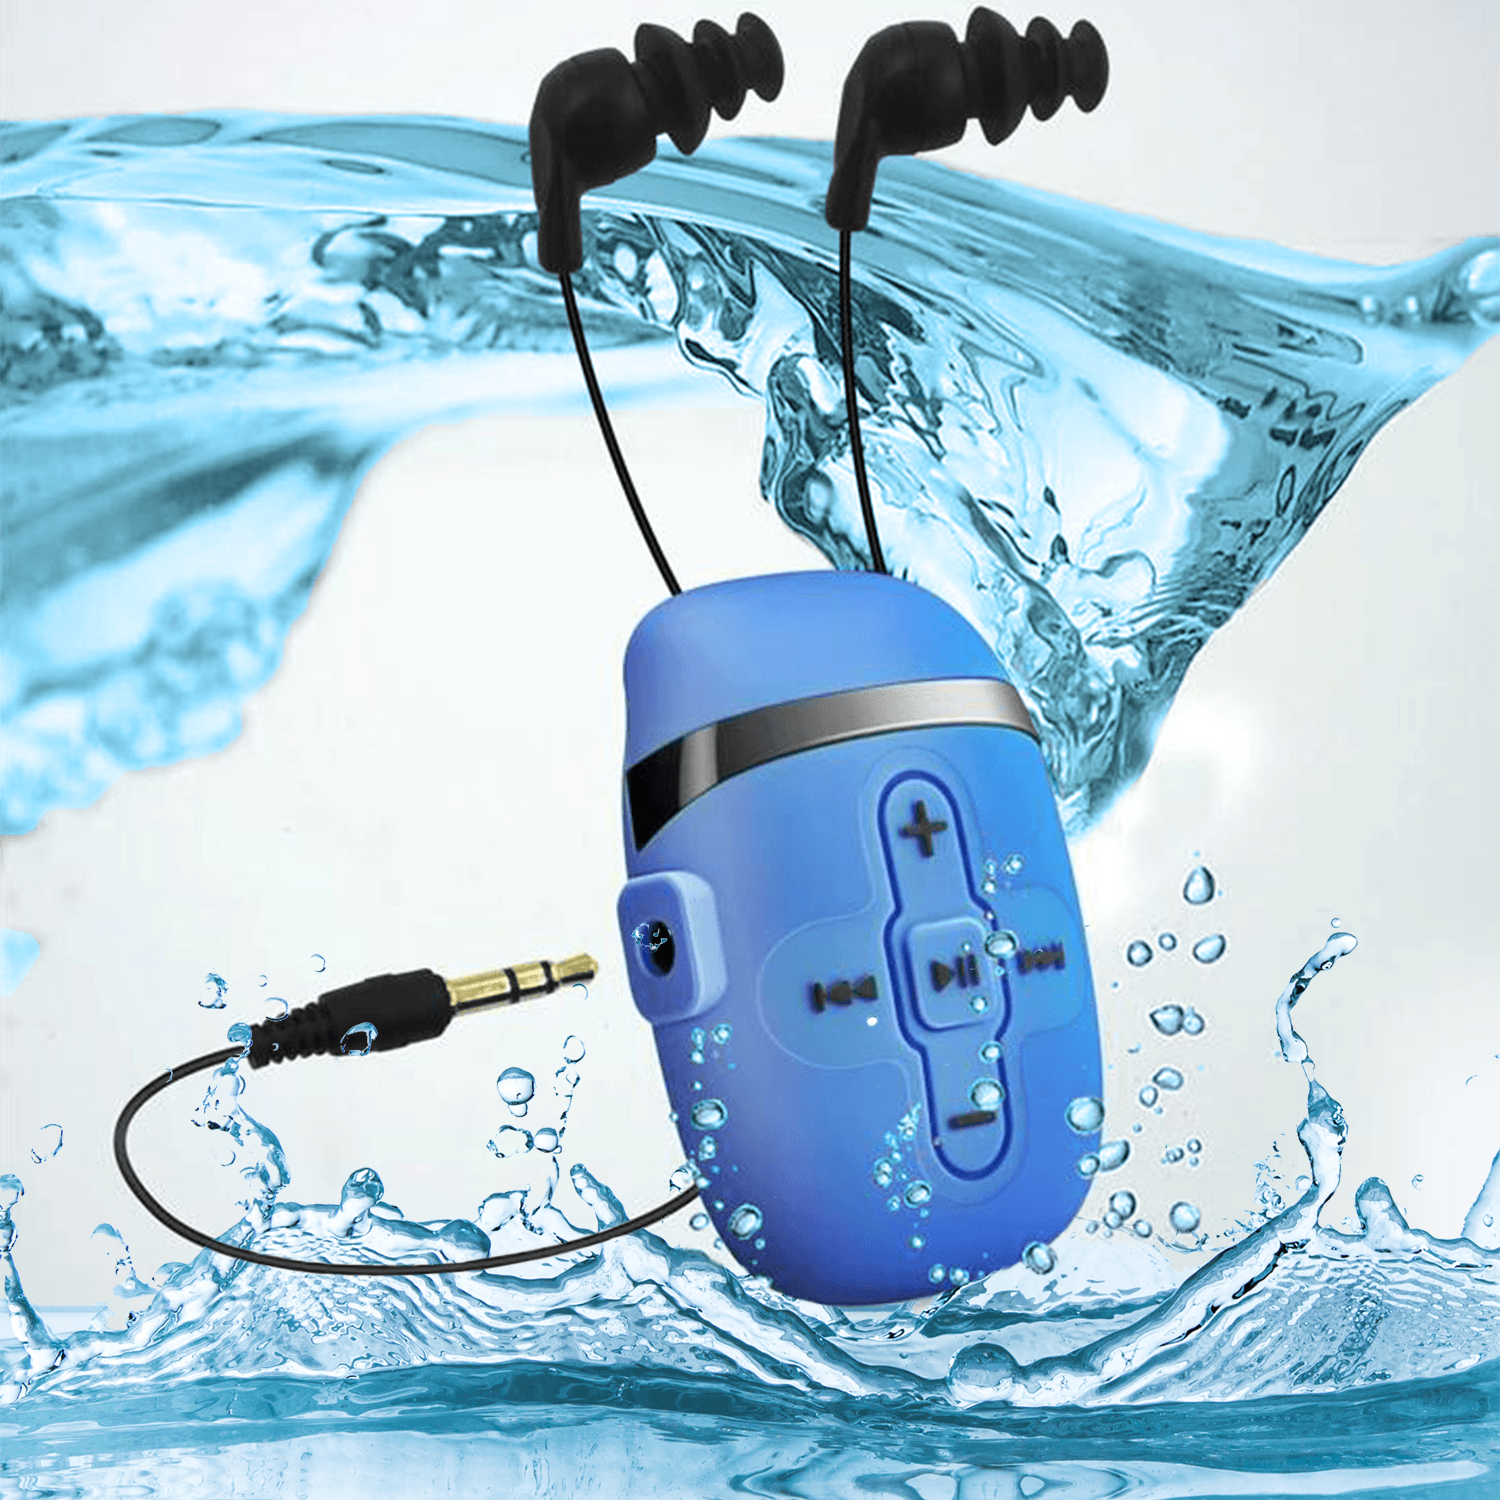  Sewobye Reproductor MP3 impermeable para natación, auriculares  impermeables con cable corto, mp3 impermeable natación bajo el agua 9.8 ft,  función de barajado (azul) : Electrónica